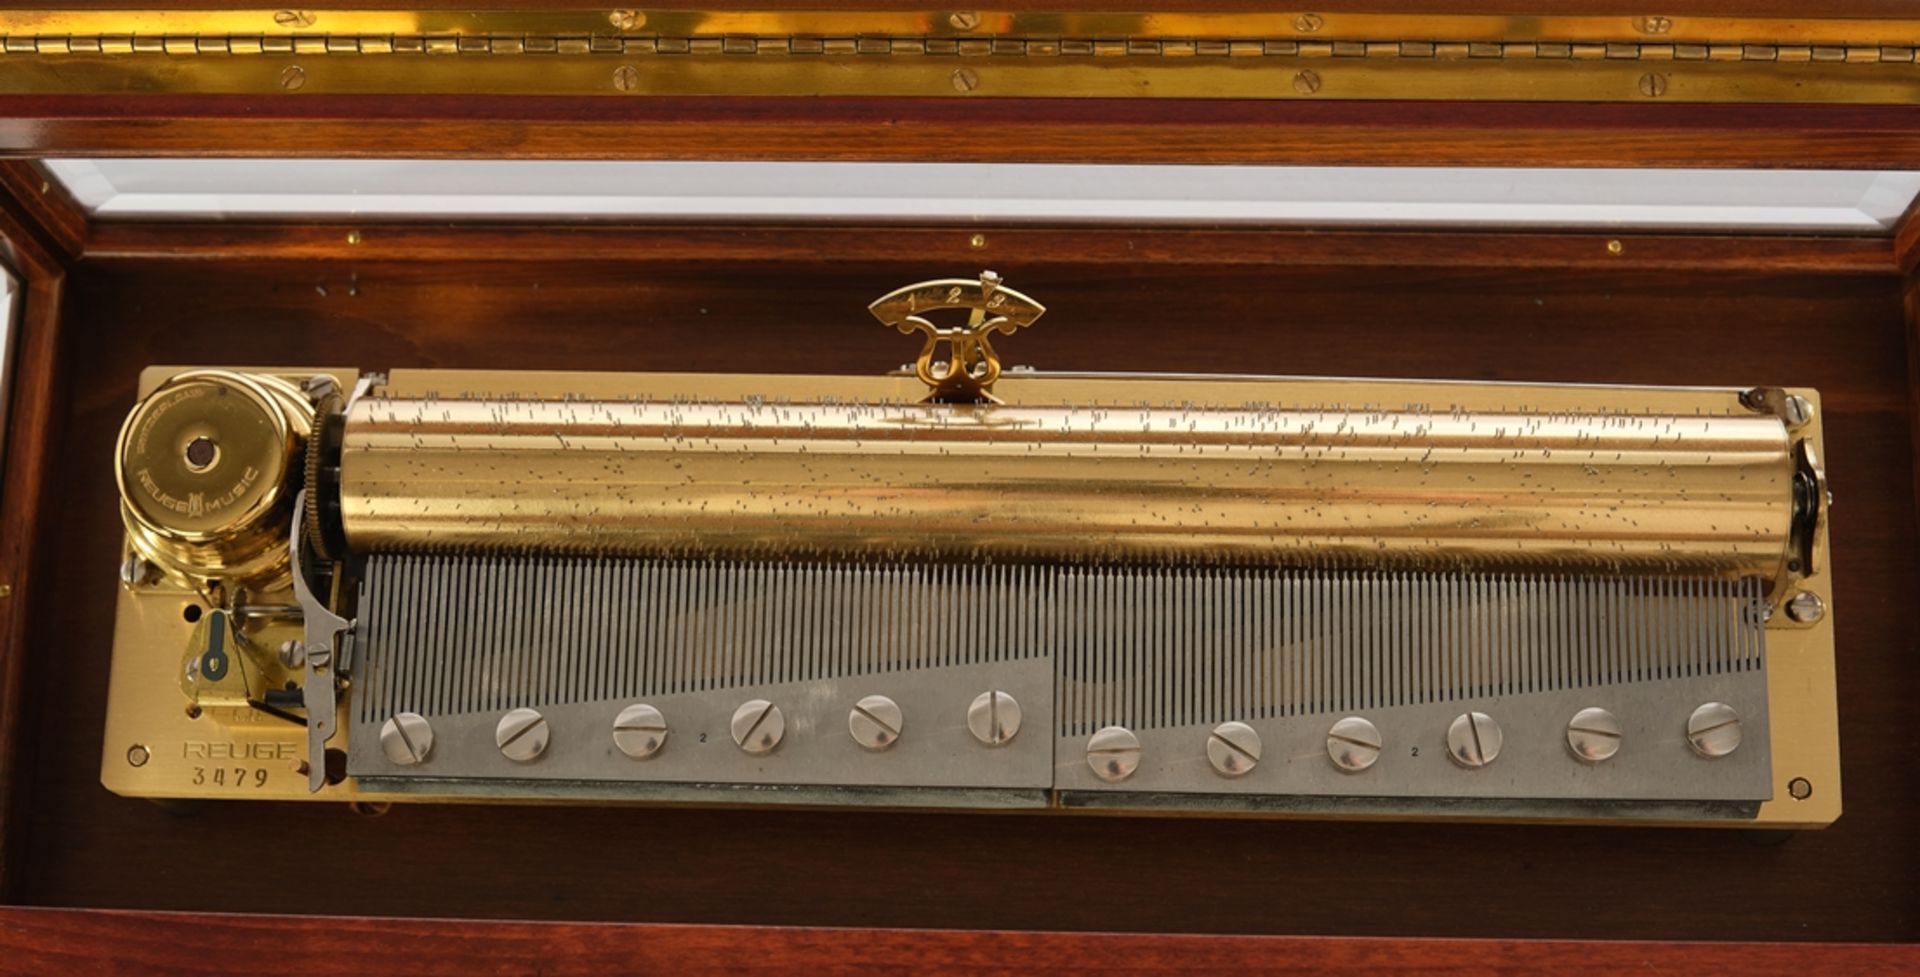 Musikspieldose, "Reuge Music", Schweiz, 2. Hälfte 20. Jh., nummeriert 3479, rechteckiger Holzkasten - Bild 2 aus 3